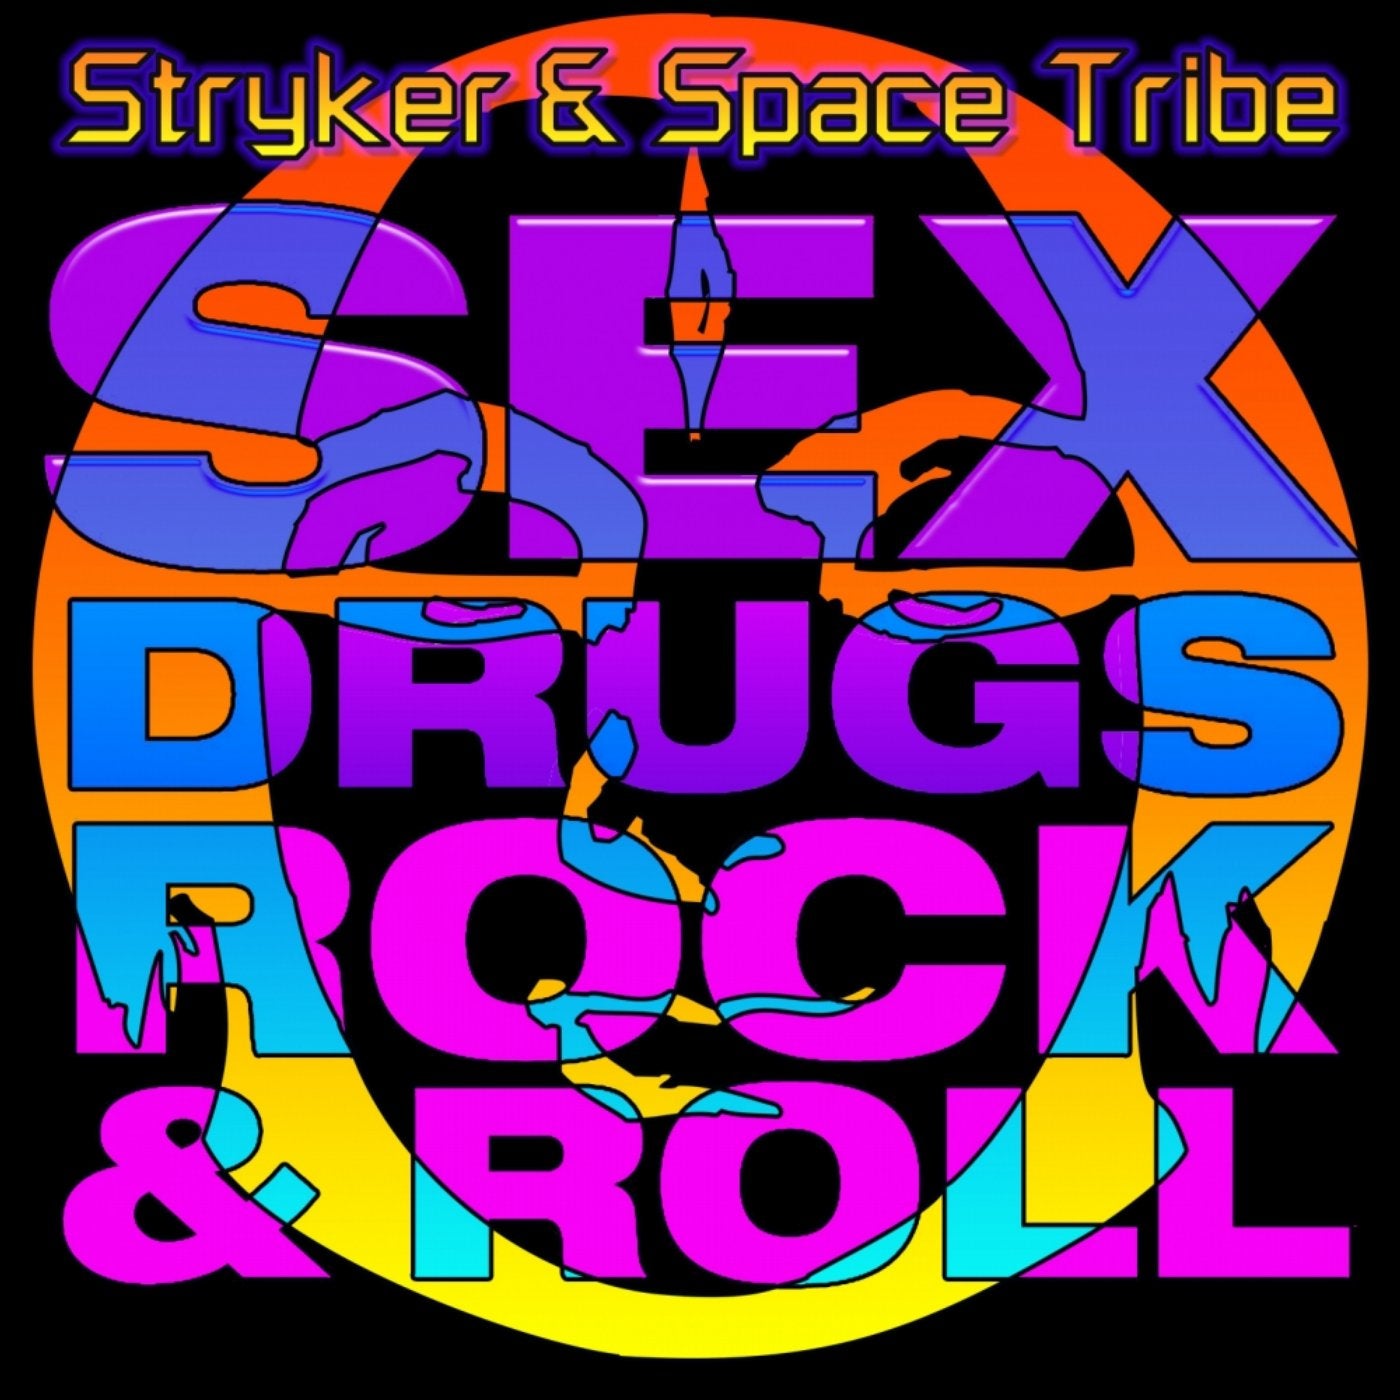 Sex, Drugs & Rock 'N Roll EP